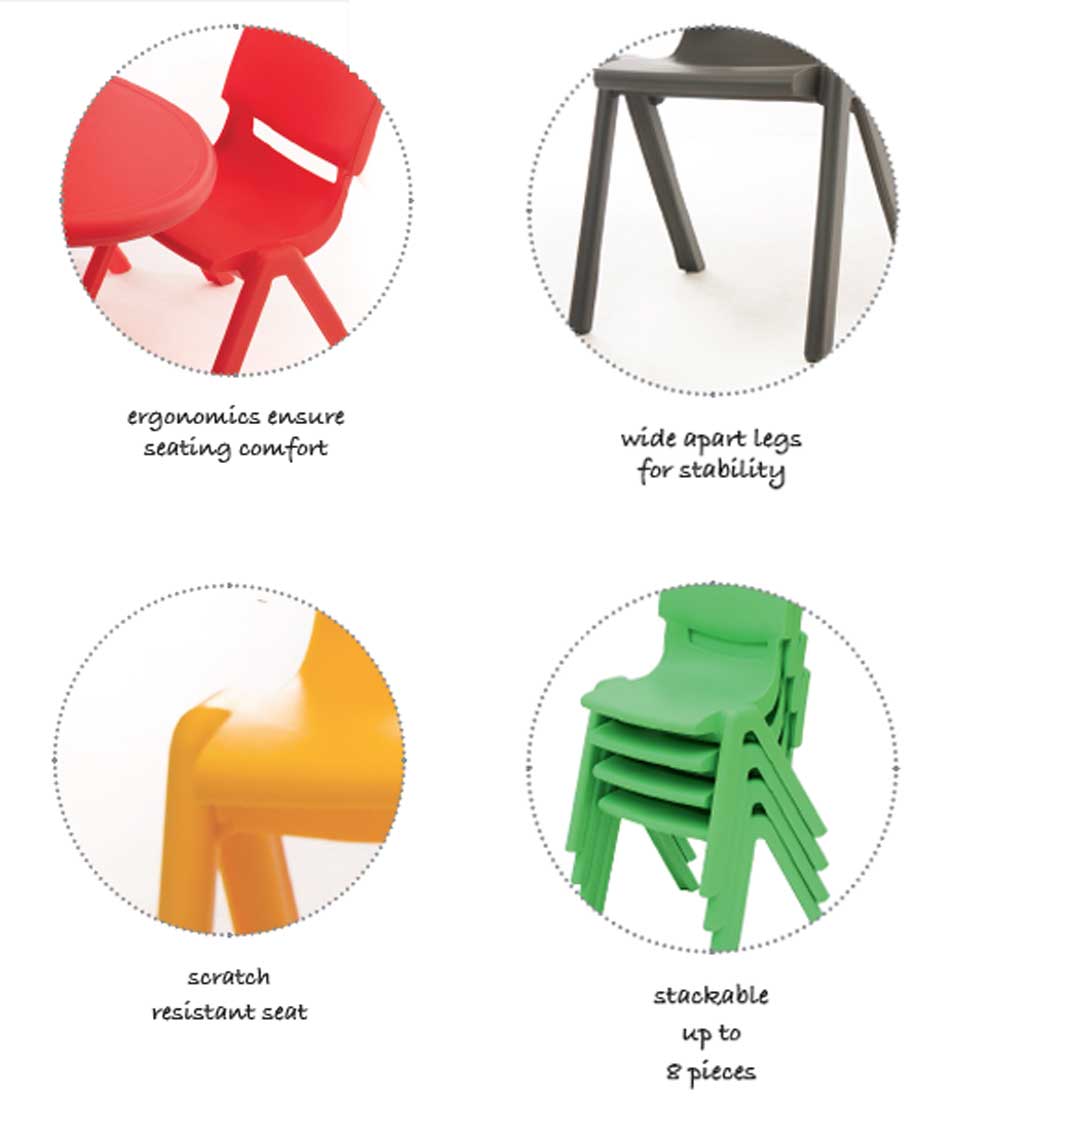 Kite Classroom Chair 46cm All Colours